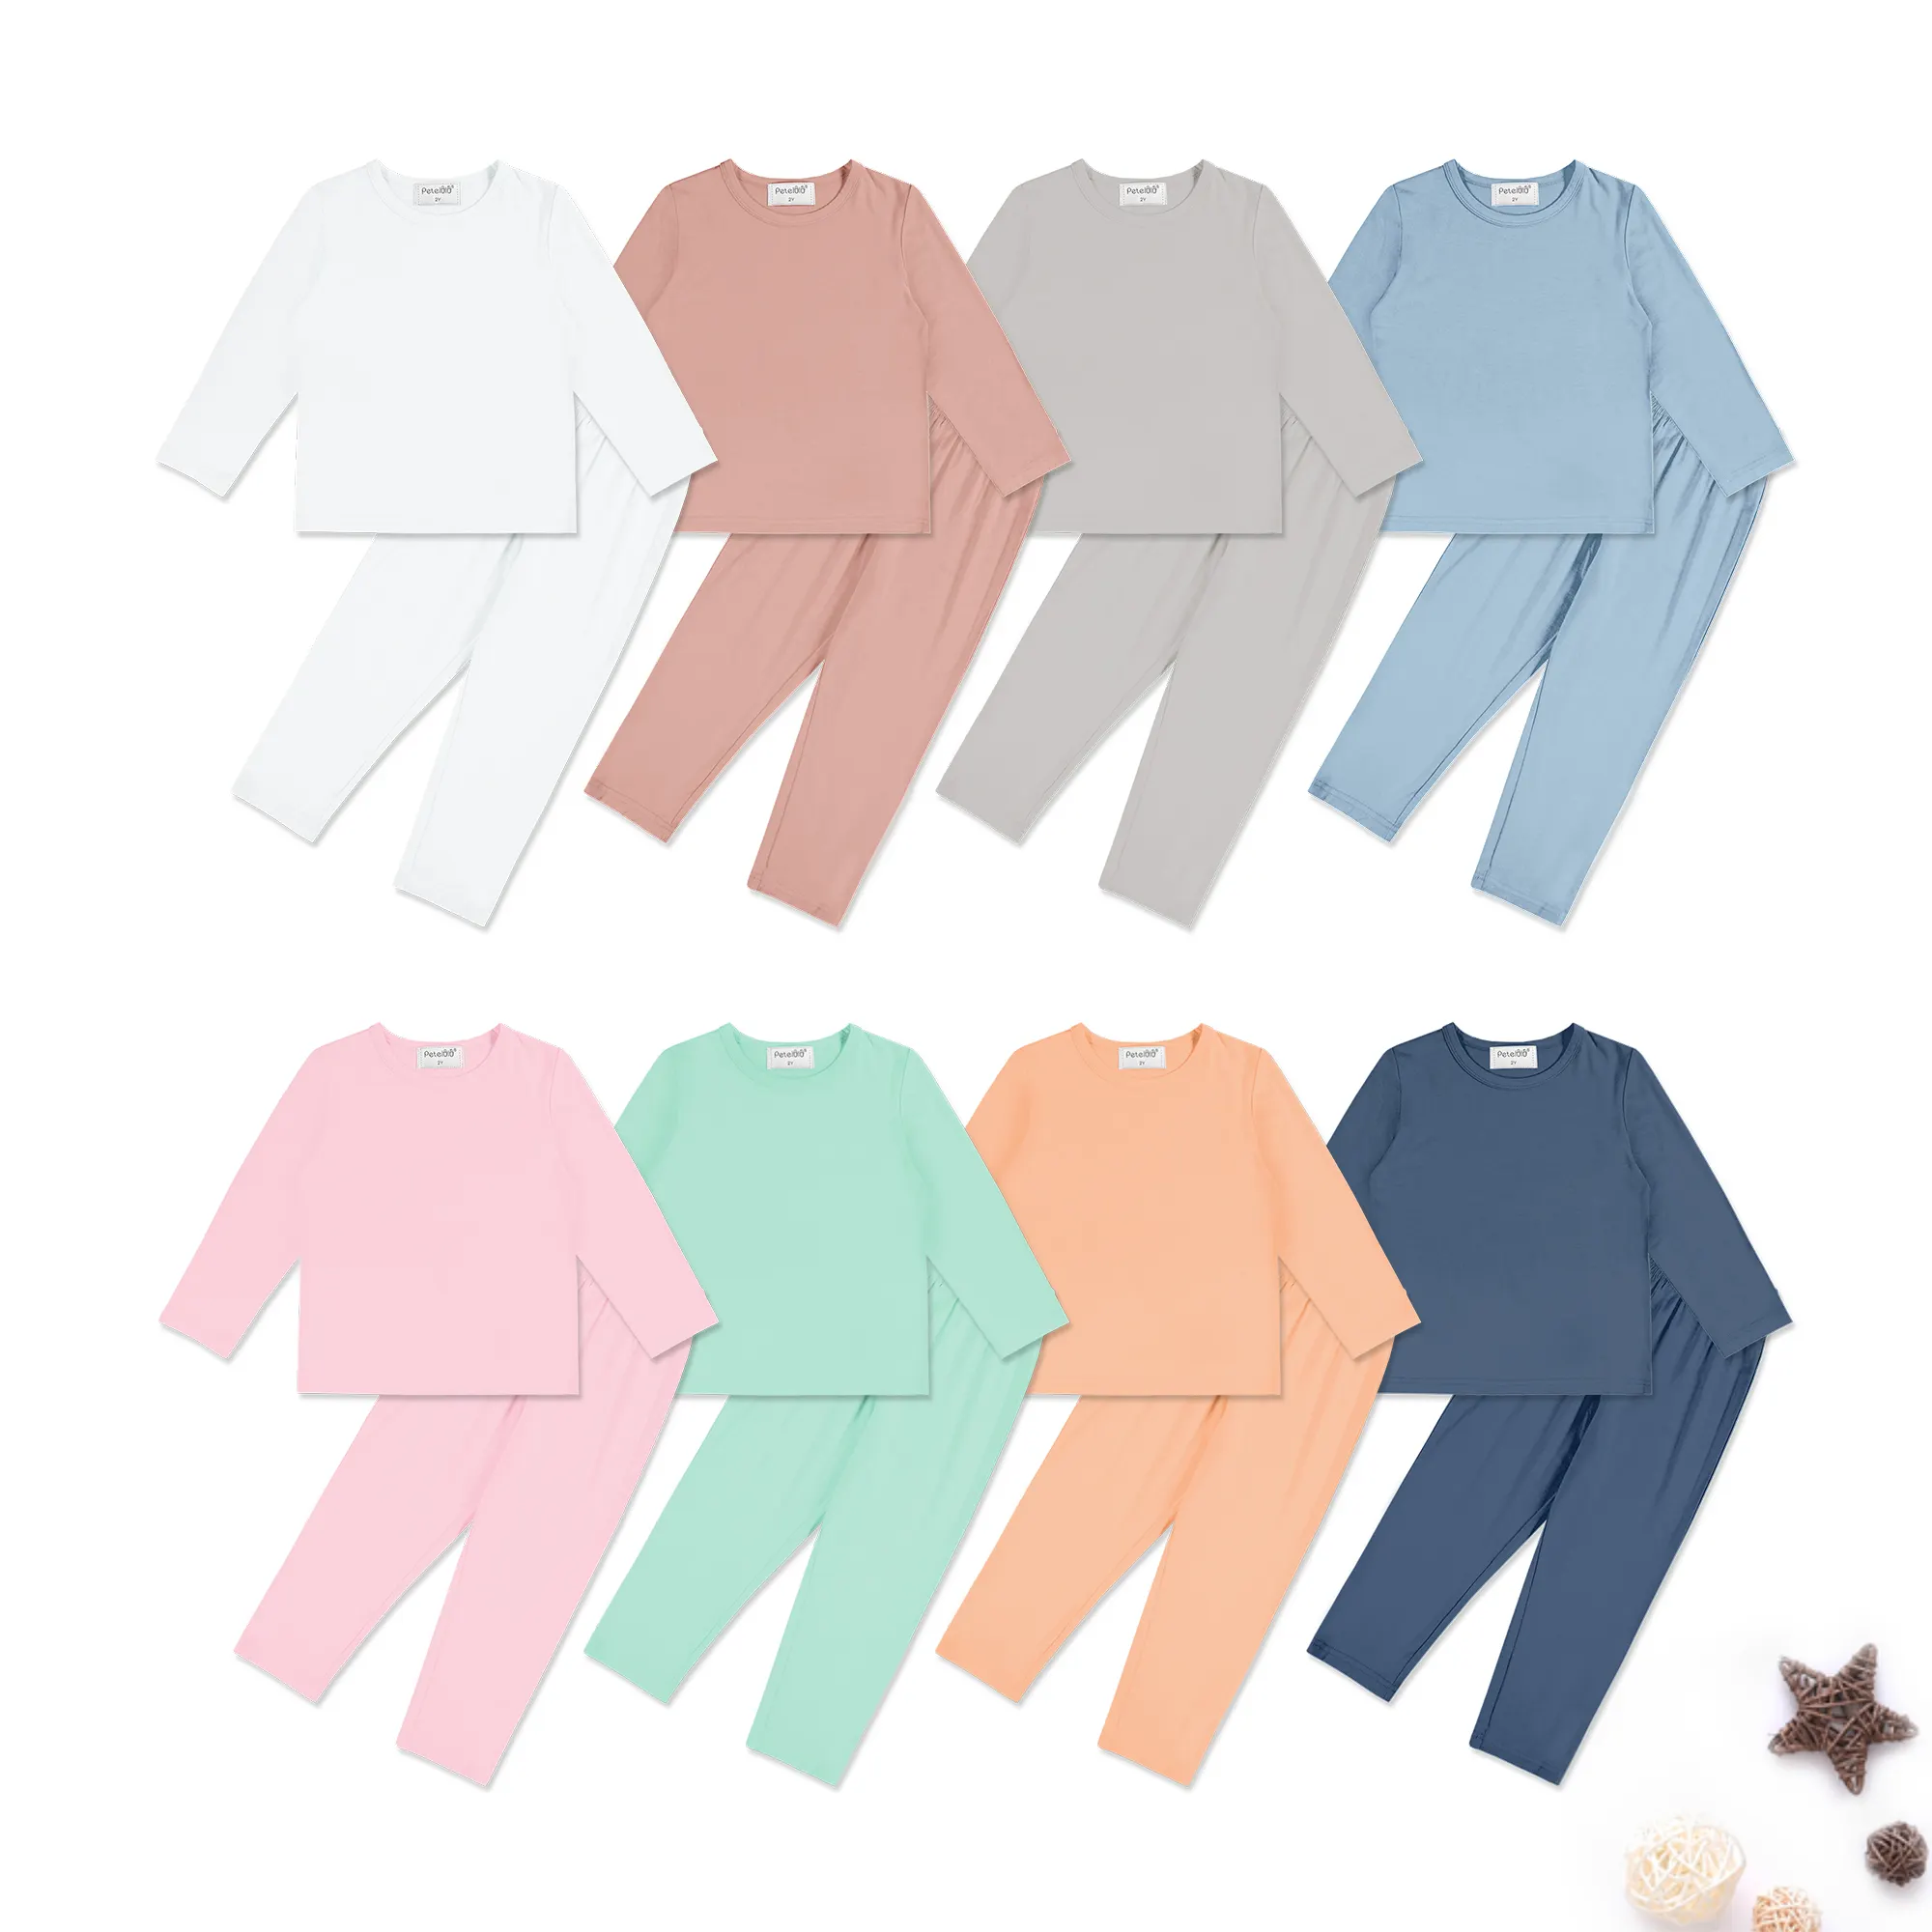 DEBAIJIA Enfant Vêtements de Maison 2-12T Bébé Pyjamas Bambin Sleepsuit Garçon Vêtements de Nuit Fille Ensembles Unisexe Flanelle